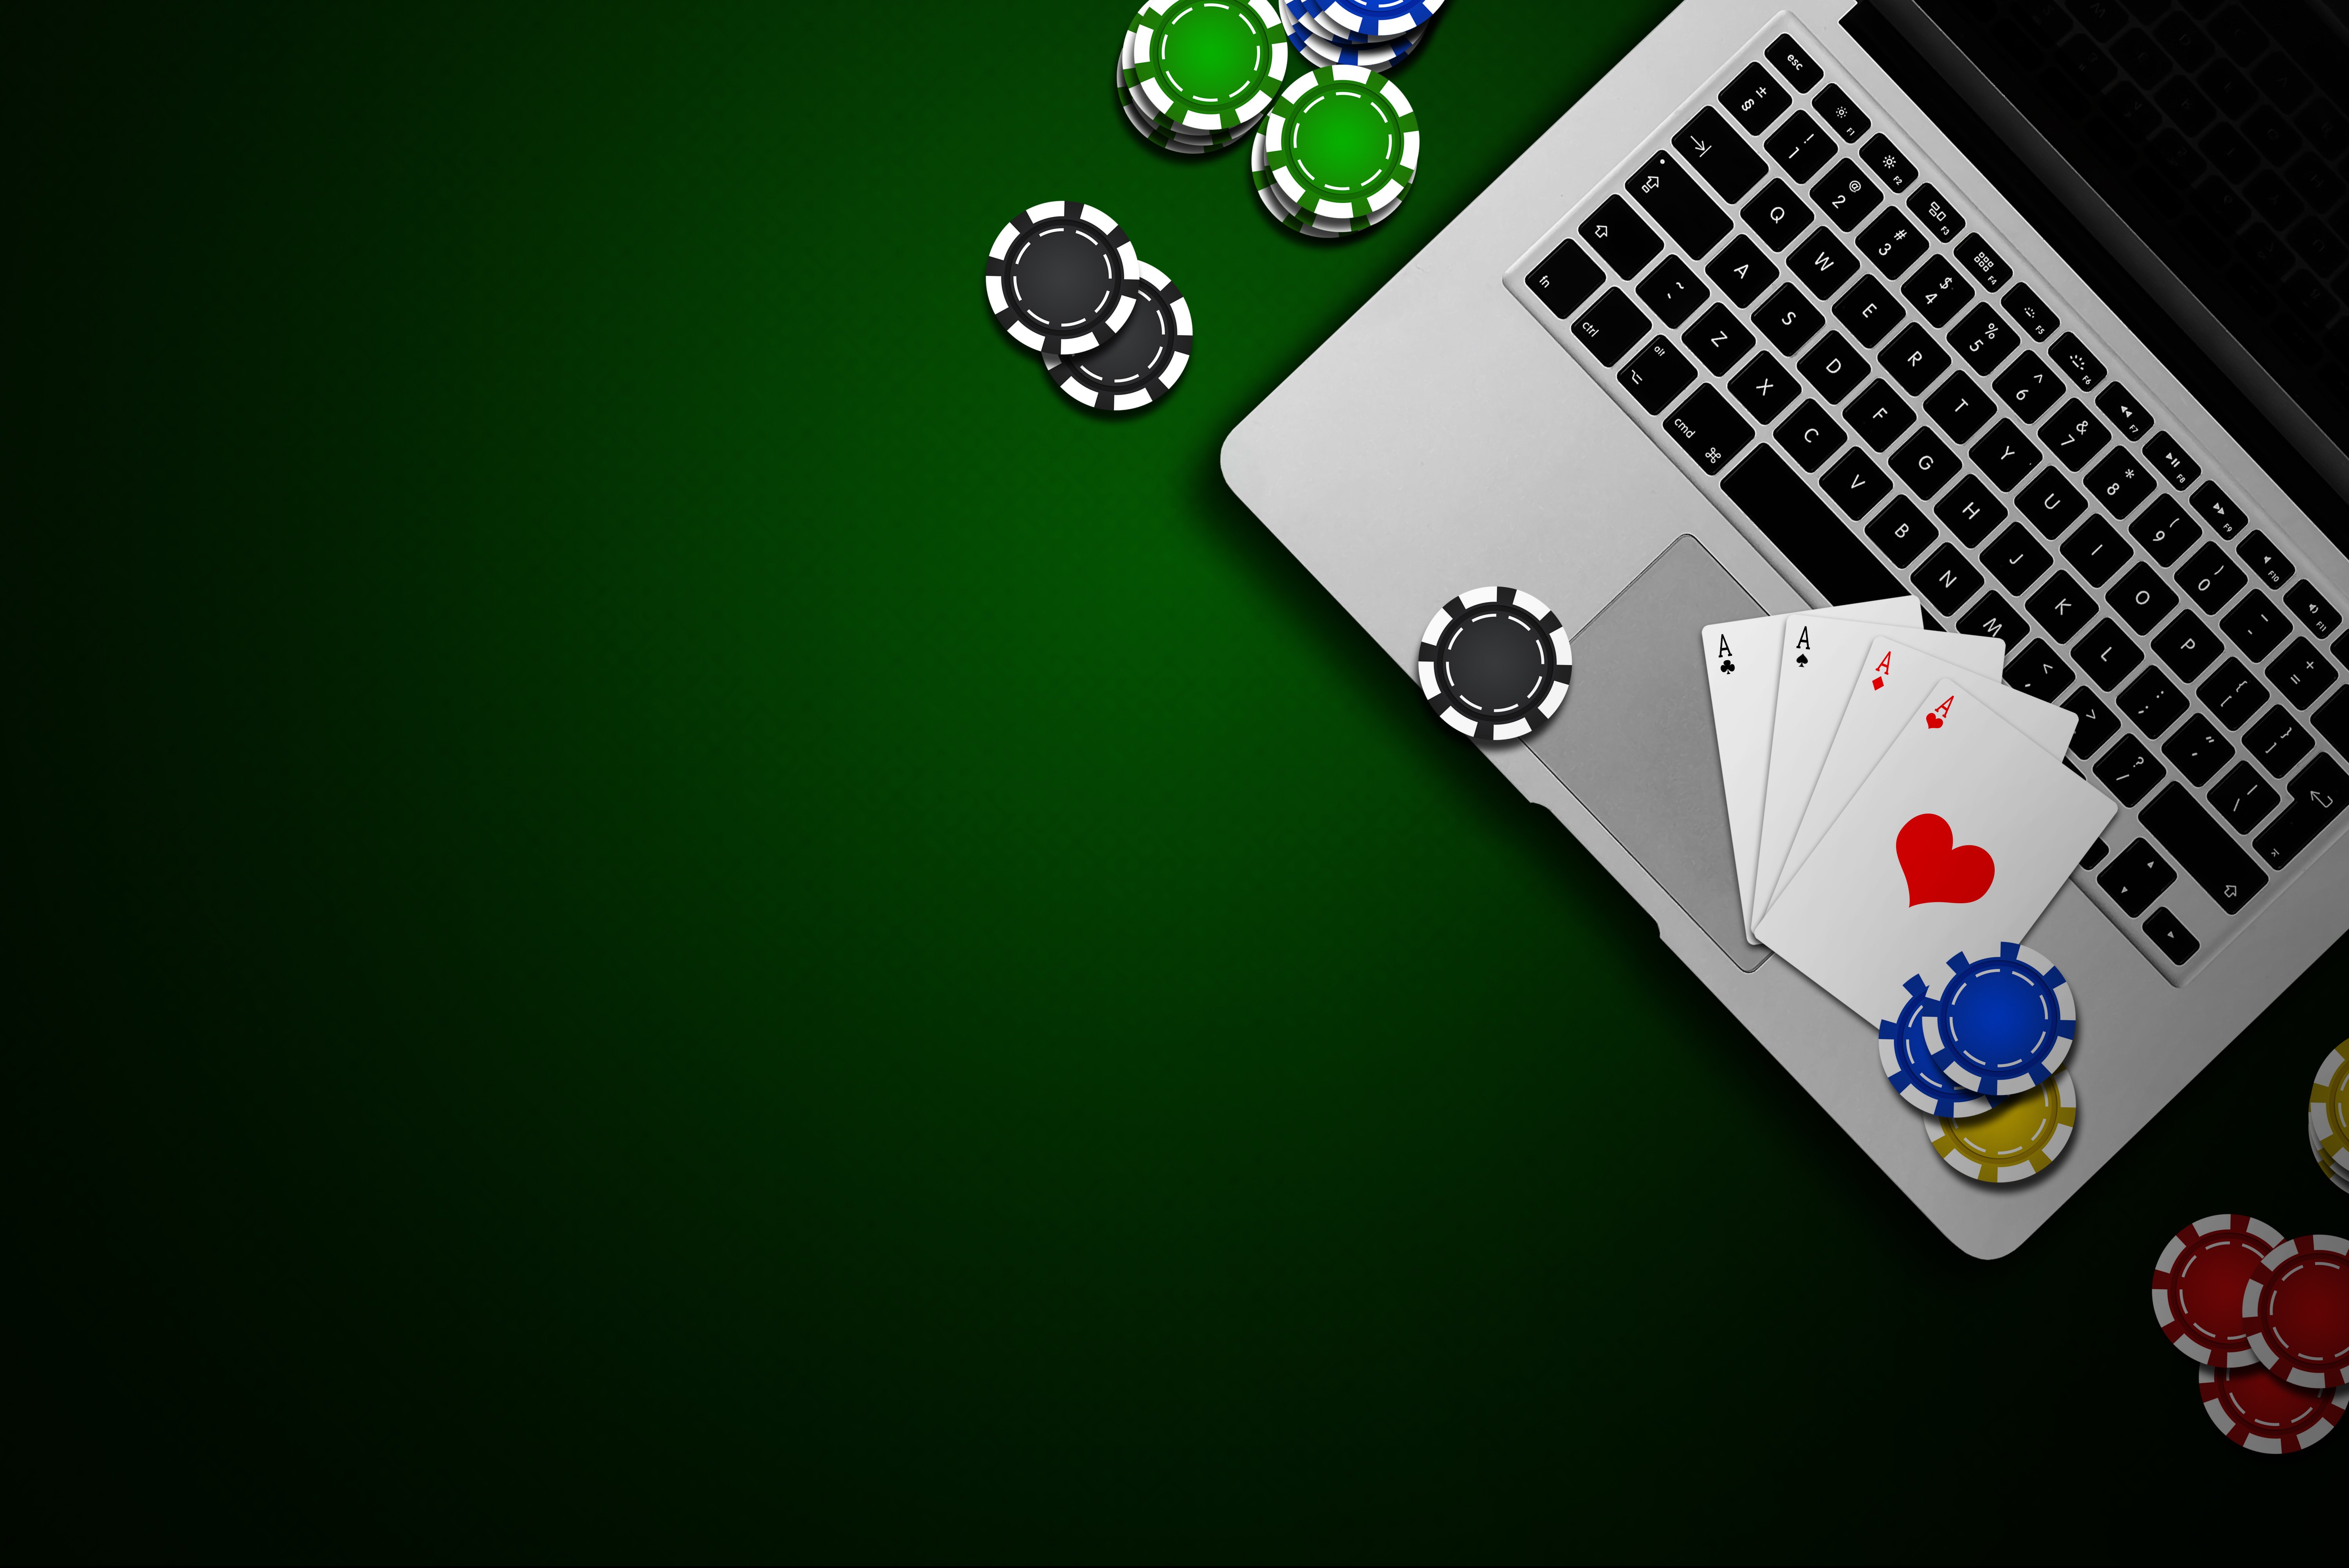 59% des Marktes sind an Poker interessiert